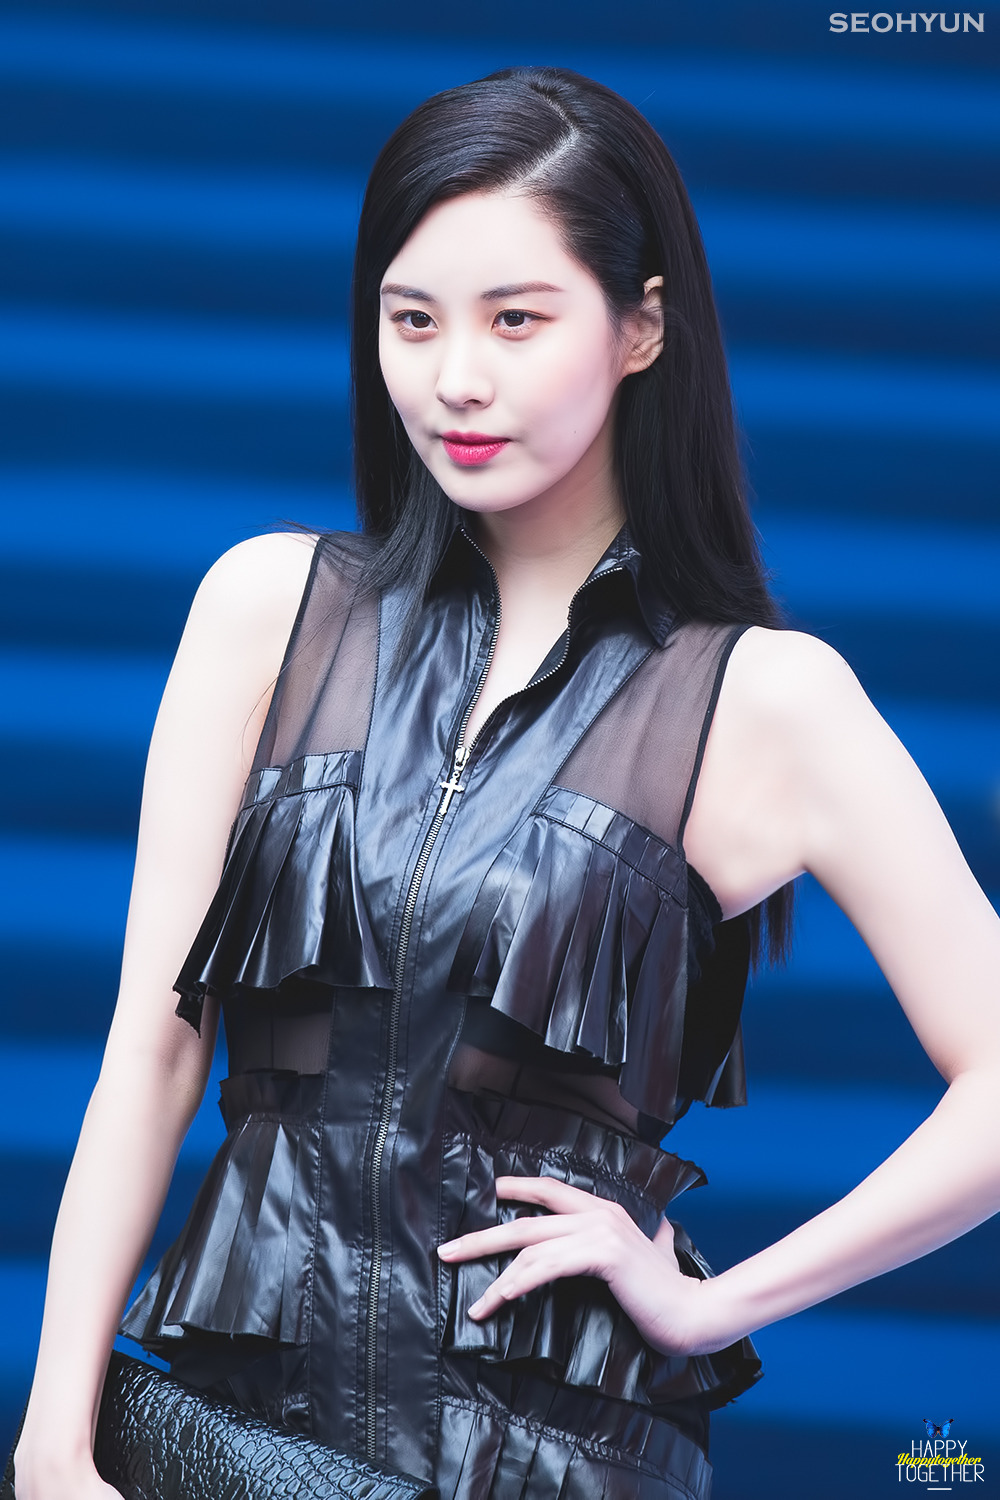 [PIC][28-03-2017]SeoHyun tham dự sự kiện ra mắt BST Thu - Đông của thương hiệu "RESURRECTION" trong khuôn khổ "2017 S/S HERA Seoul Fashion Week" vào chiều nay   - Page 2 2126224158DA775403C861